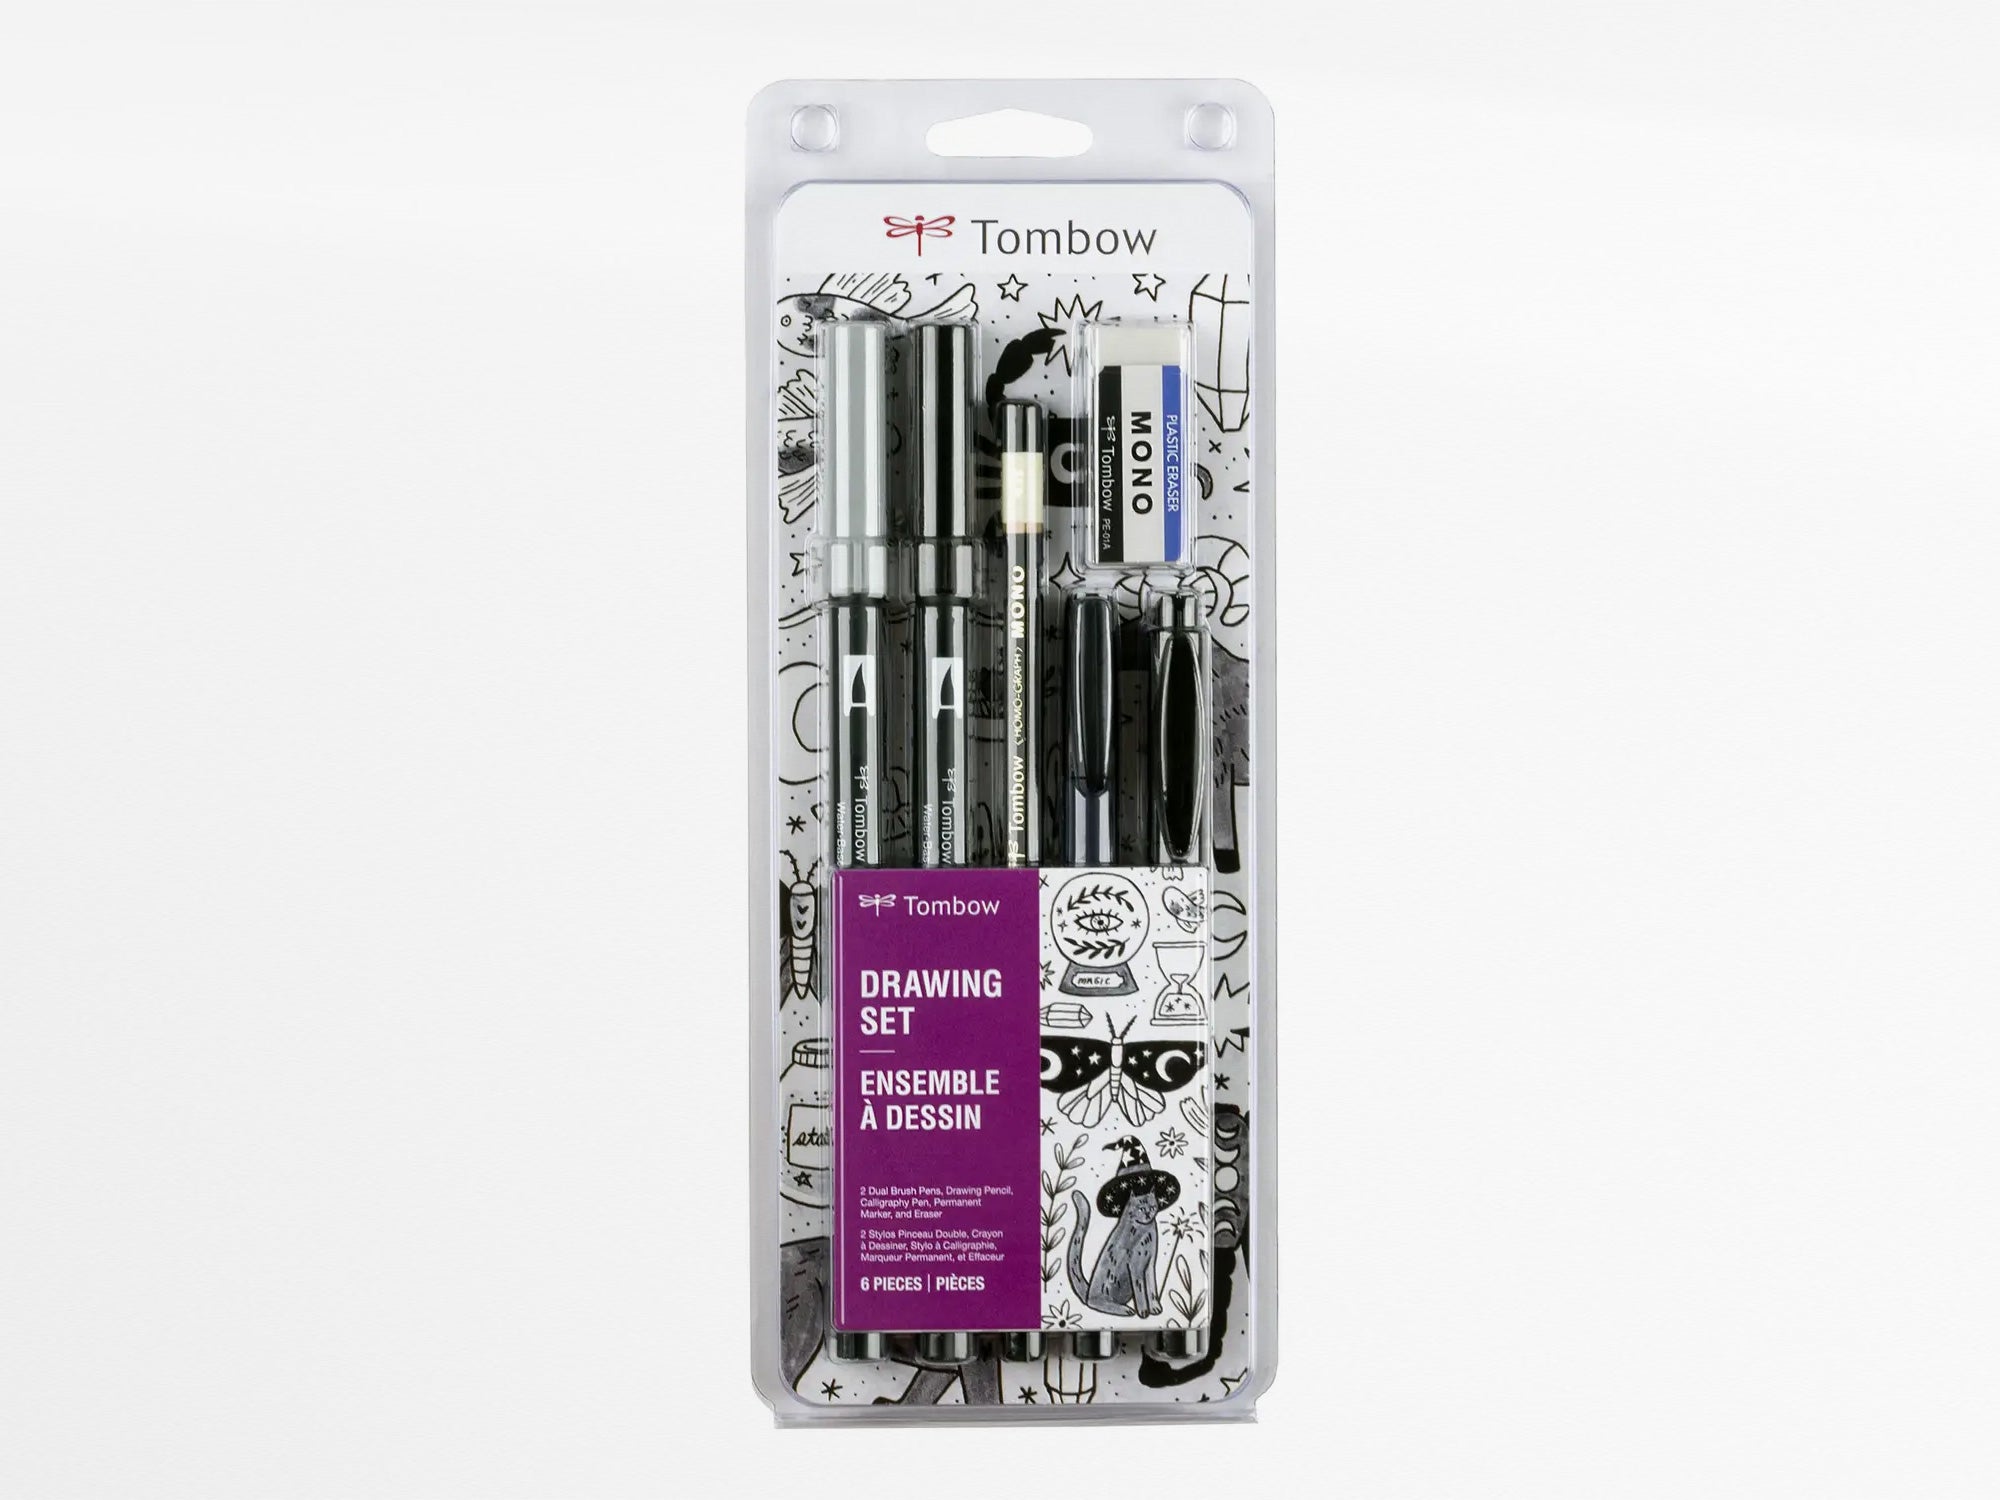 Pen Store Get started - Sketch set!